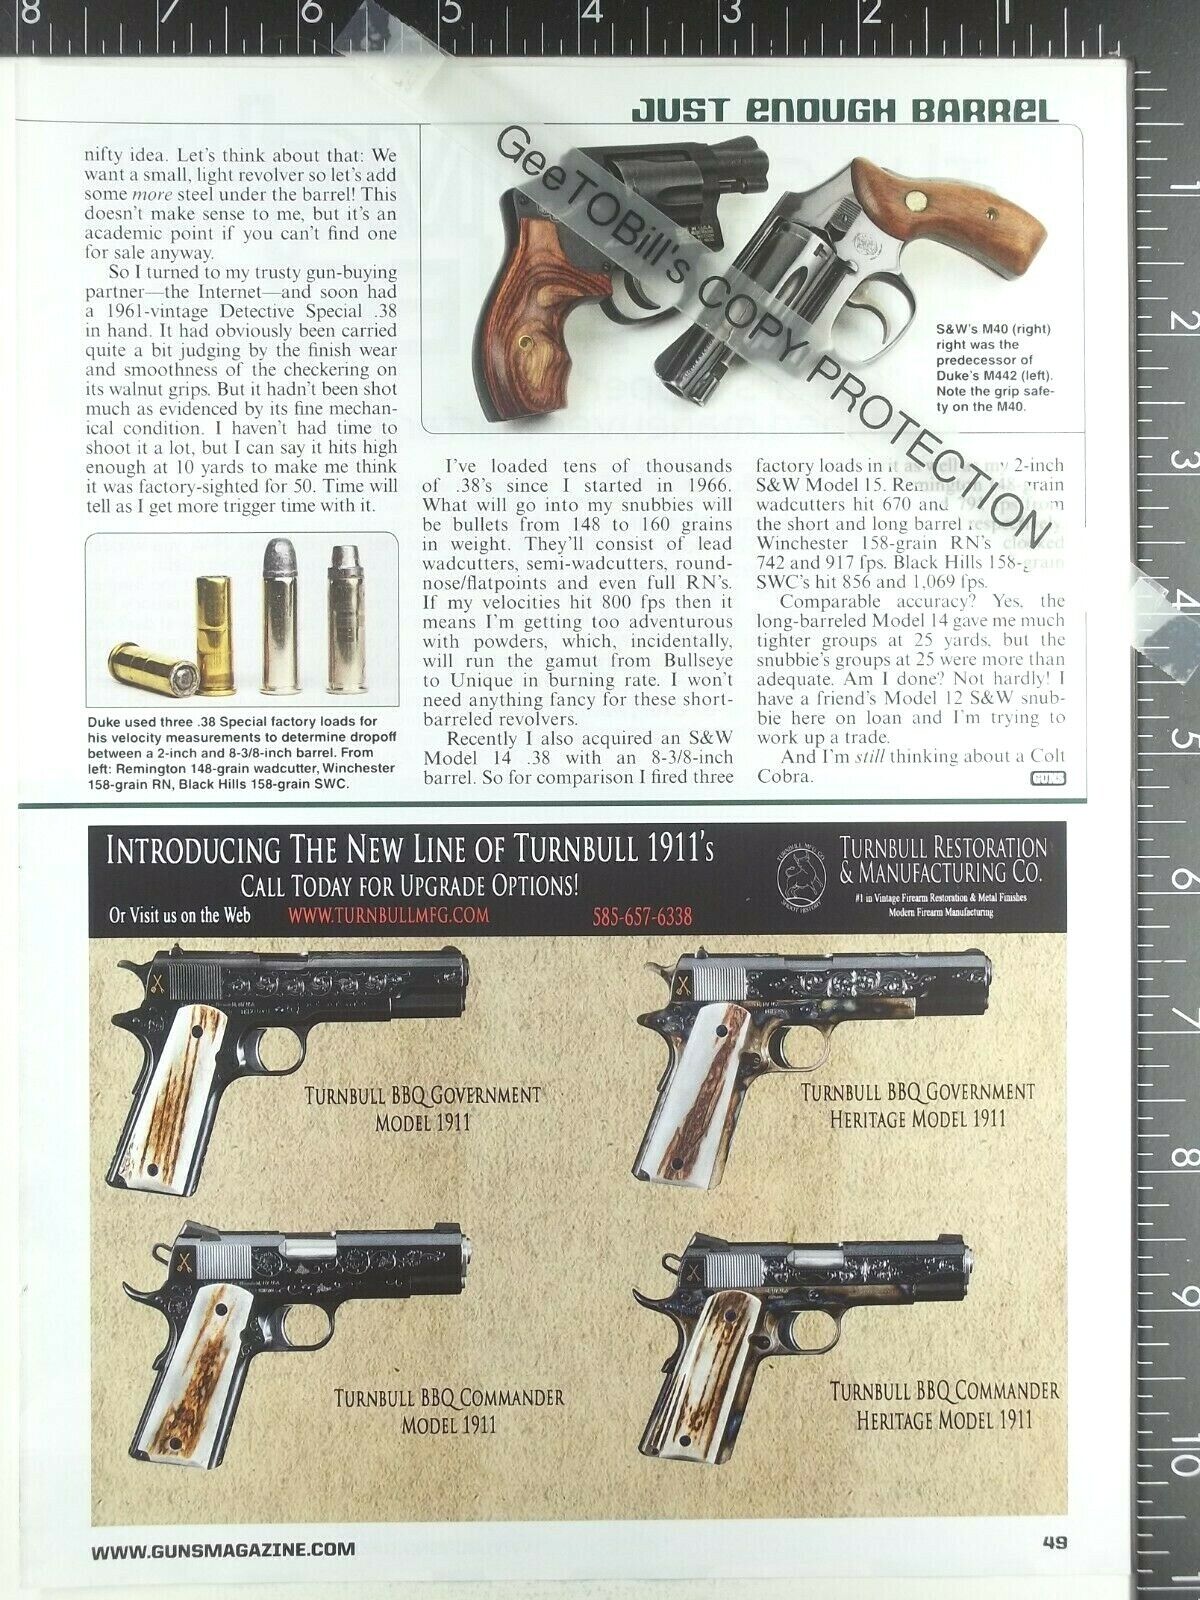 2015 ADVERTISING AD for Turnbull BBQ Goverment Commander Heritage1911 pistol gun